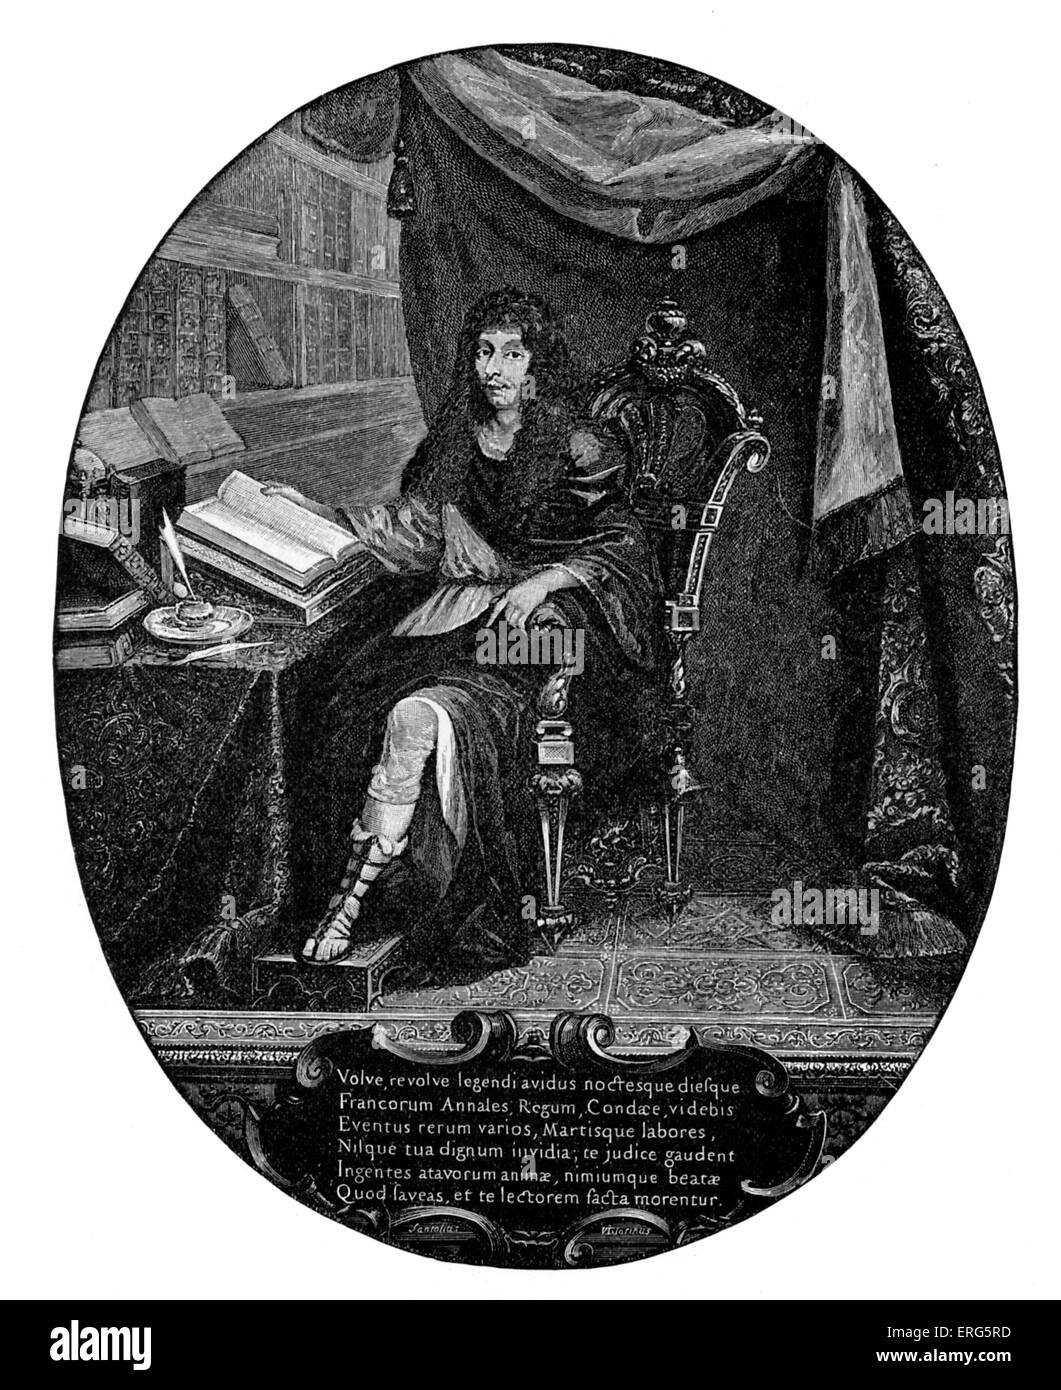 Louis de Bourbon, prince de Condé. Le général français et le plus célèbre représentant de la direction de Condé de La Maison de Bourbon. Banque D'Images